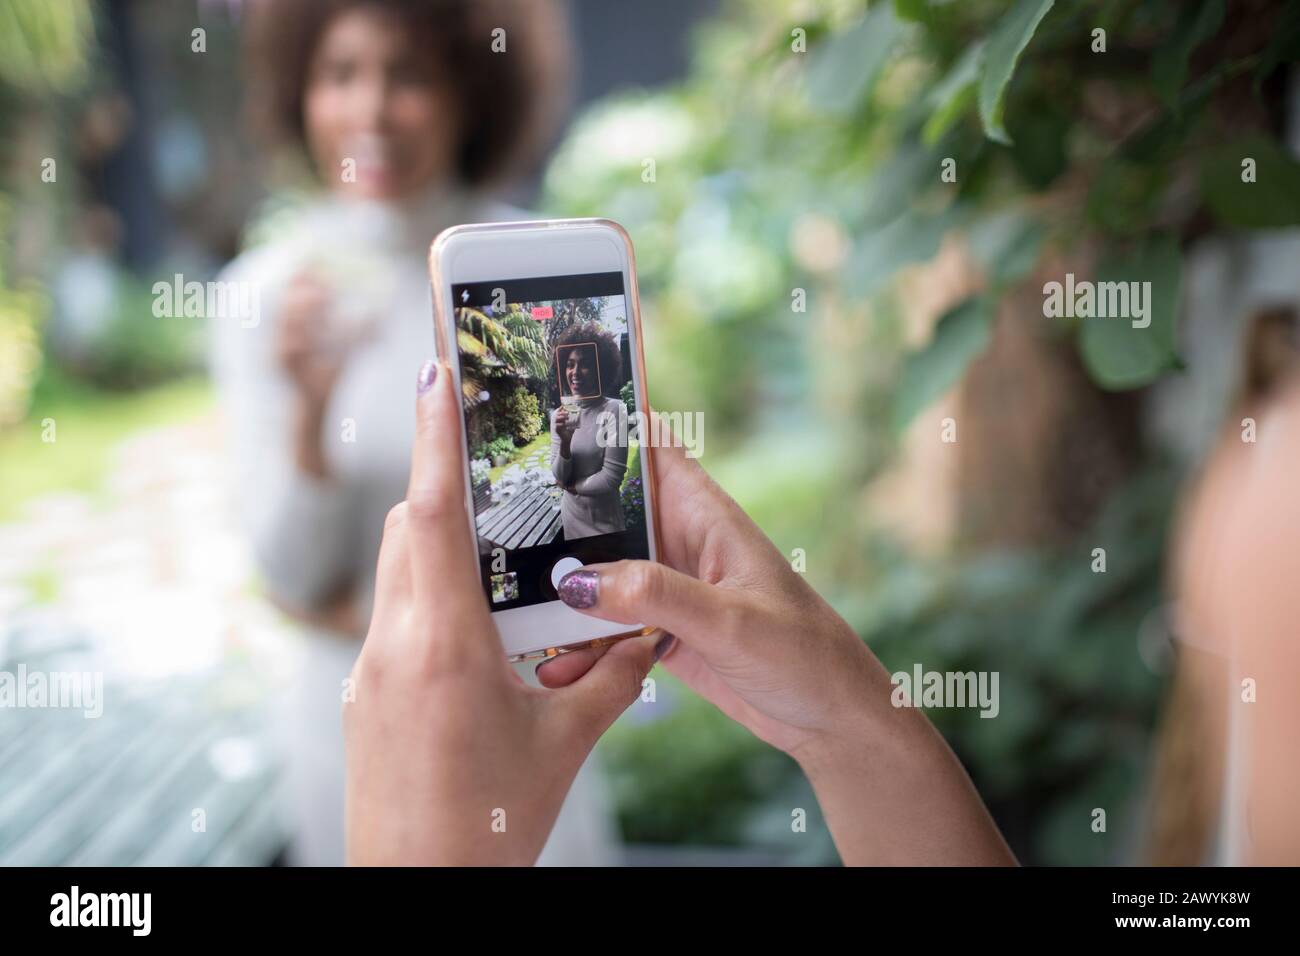 Mujer perspectiva personal con teléfono inteligente fotografiando a un amigo Foto de stock